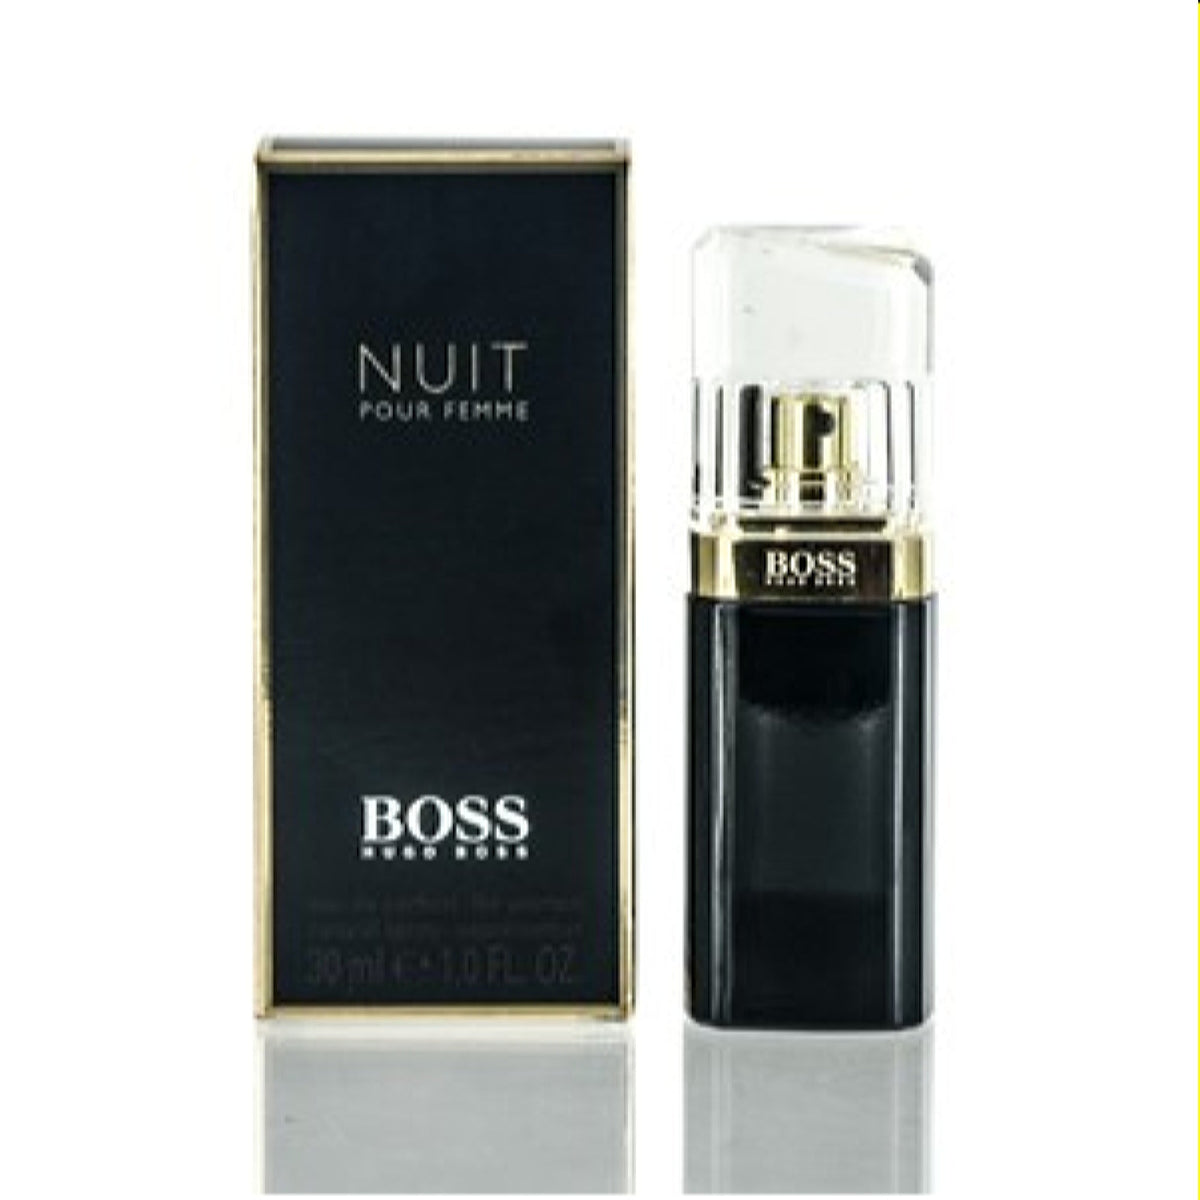 Boss Nuit Pour Femme Hugo Boss Edp Spray 1.0 Oz (30 Ml) For Women  54991